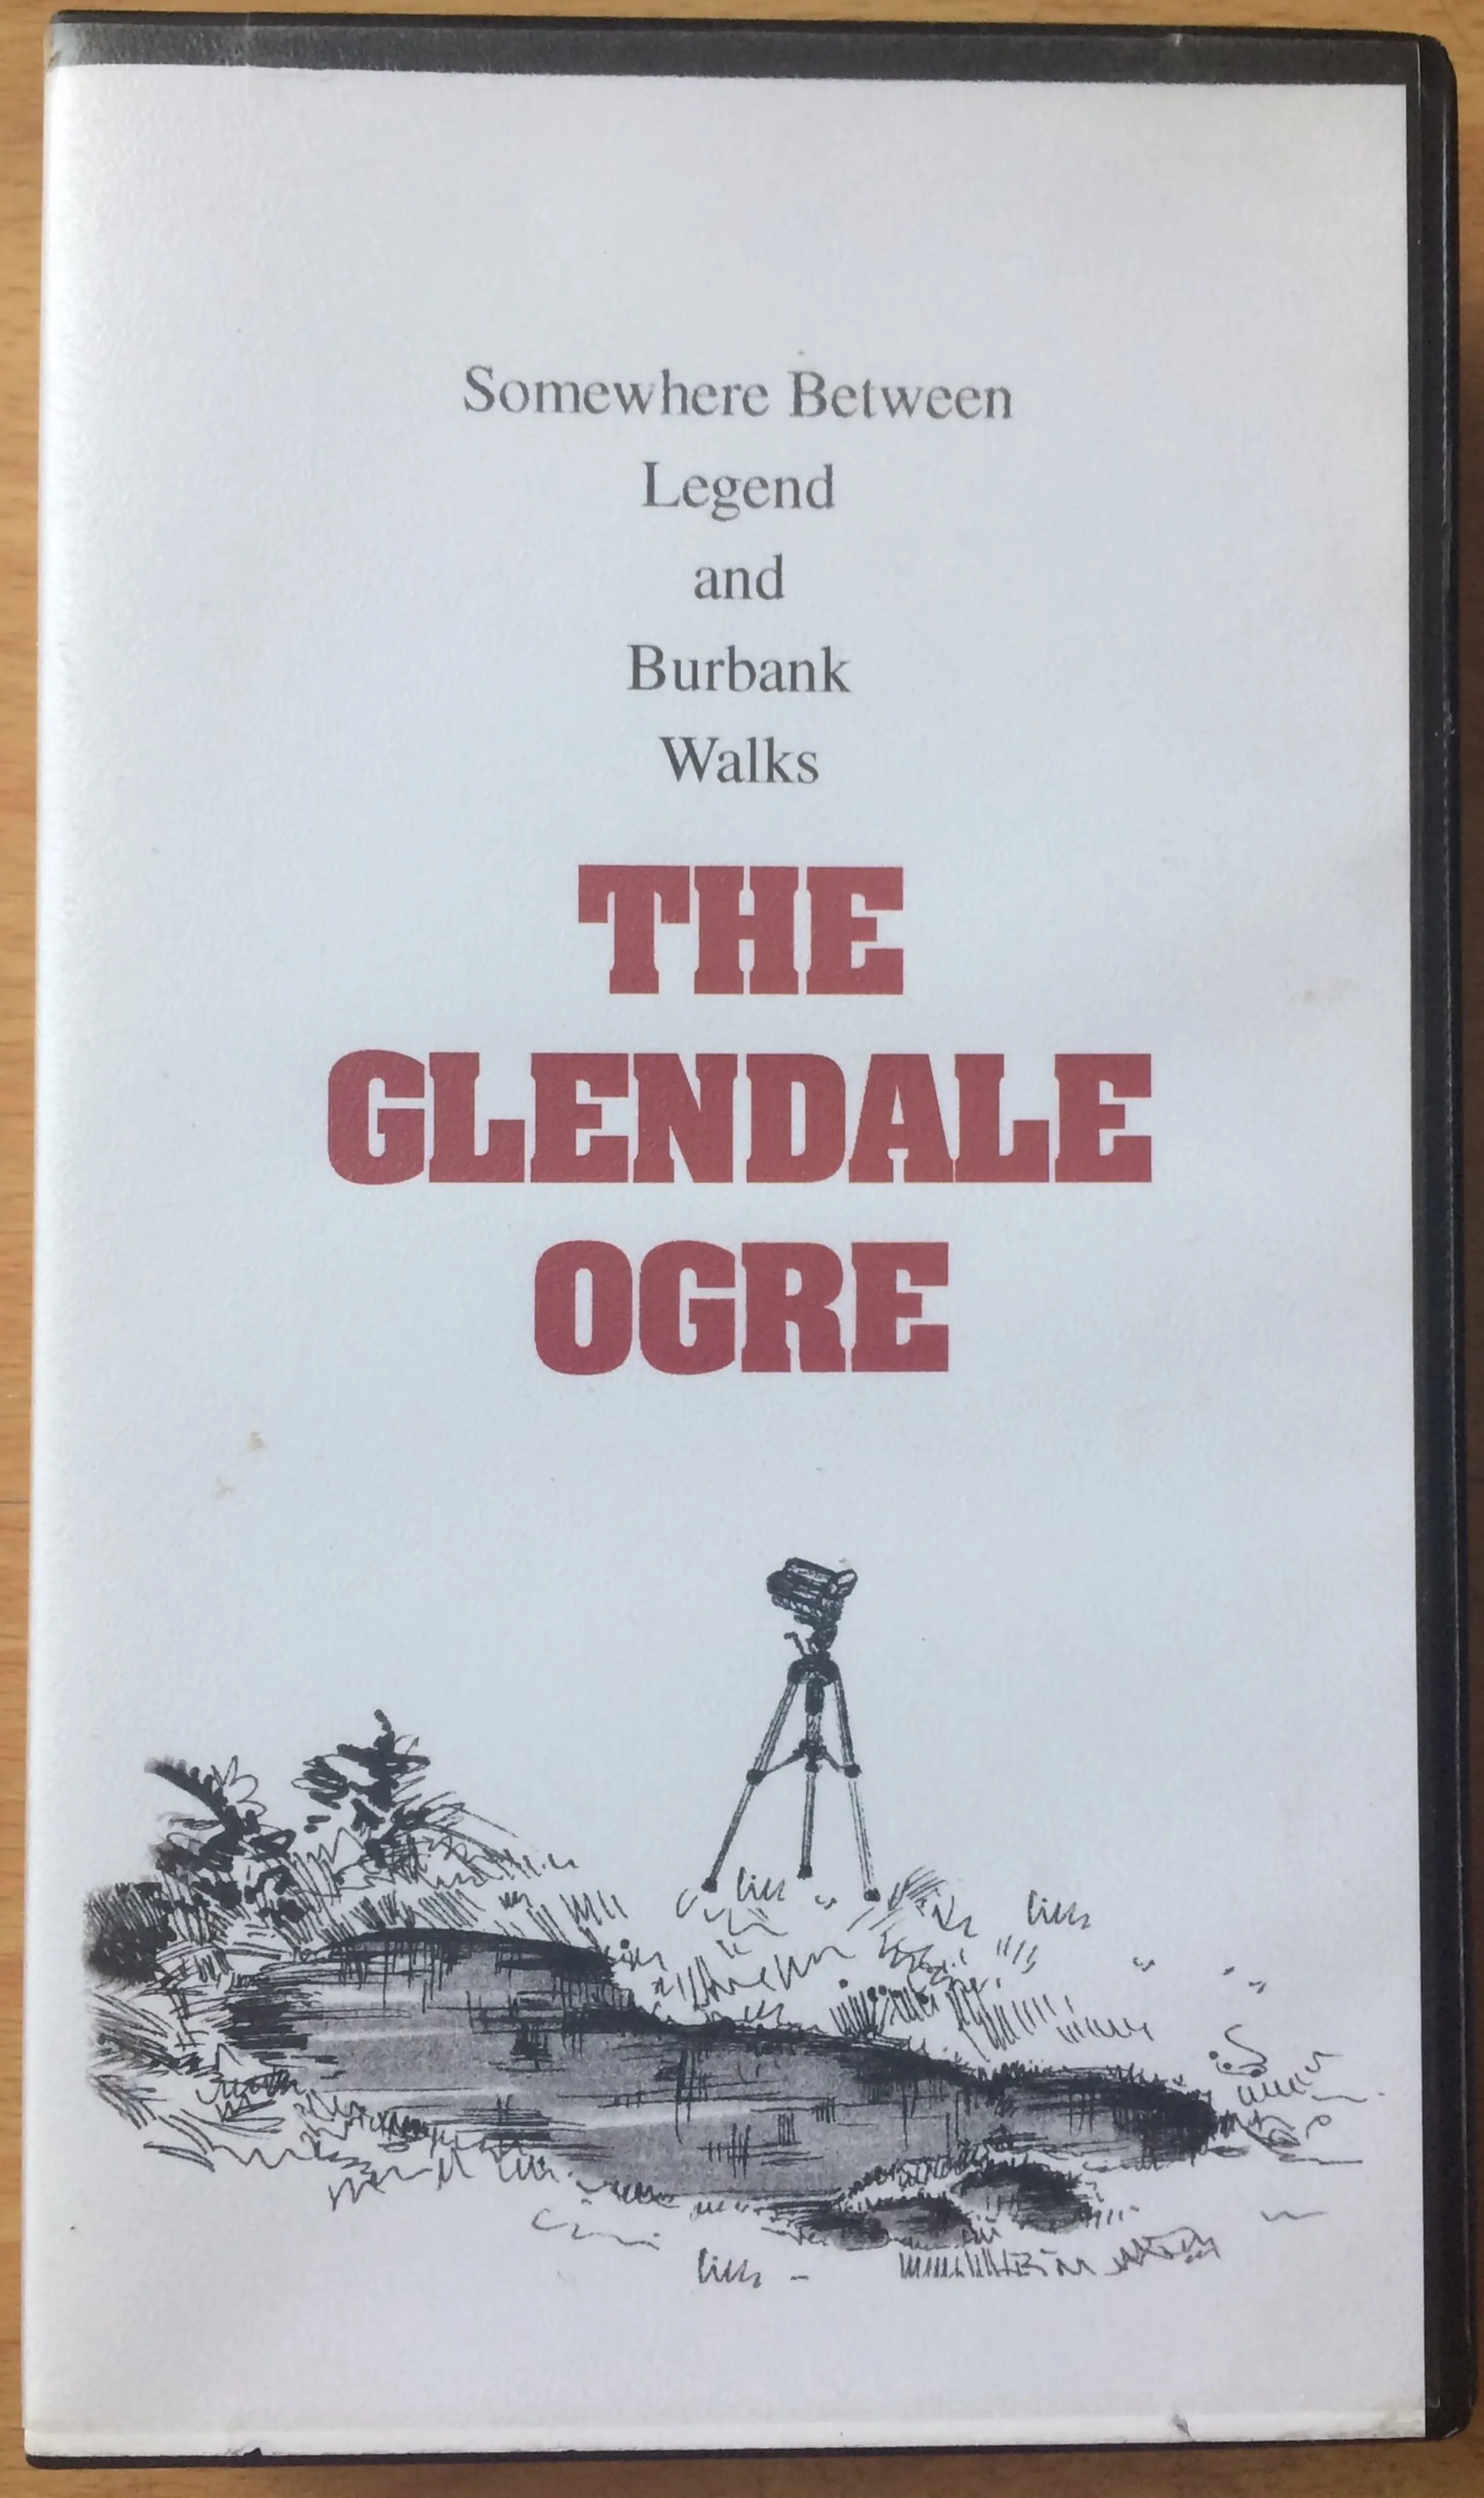 The Glendale Ogre